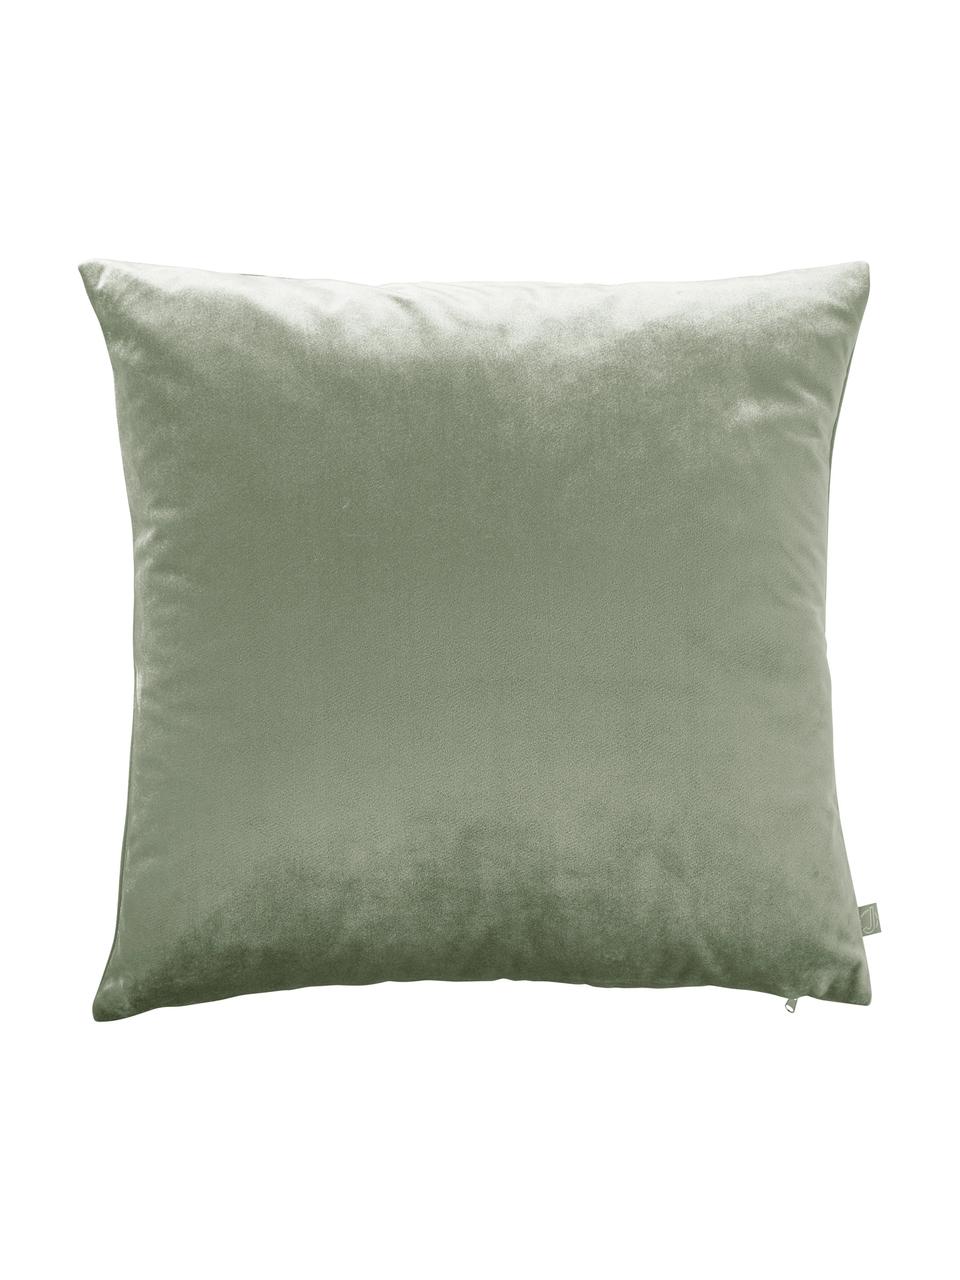 Fluwelenkussenhoezen Nicole, 3-delig, 100% polyester fluweel, Groen, donkergroen, wit, B 50 x L 50 cm